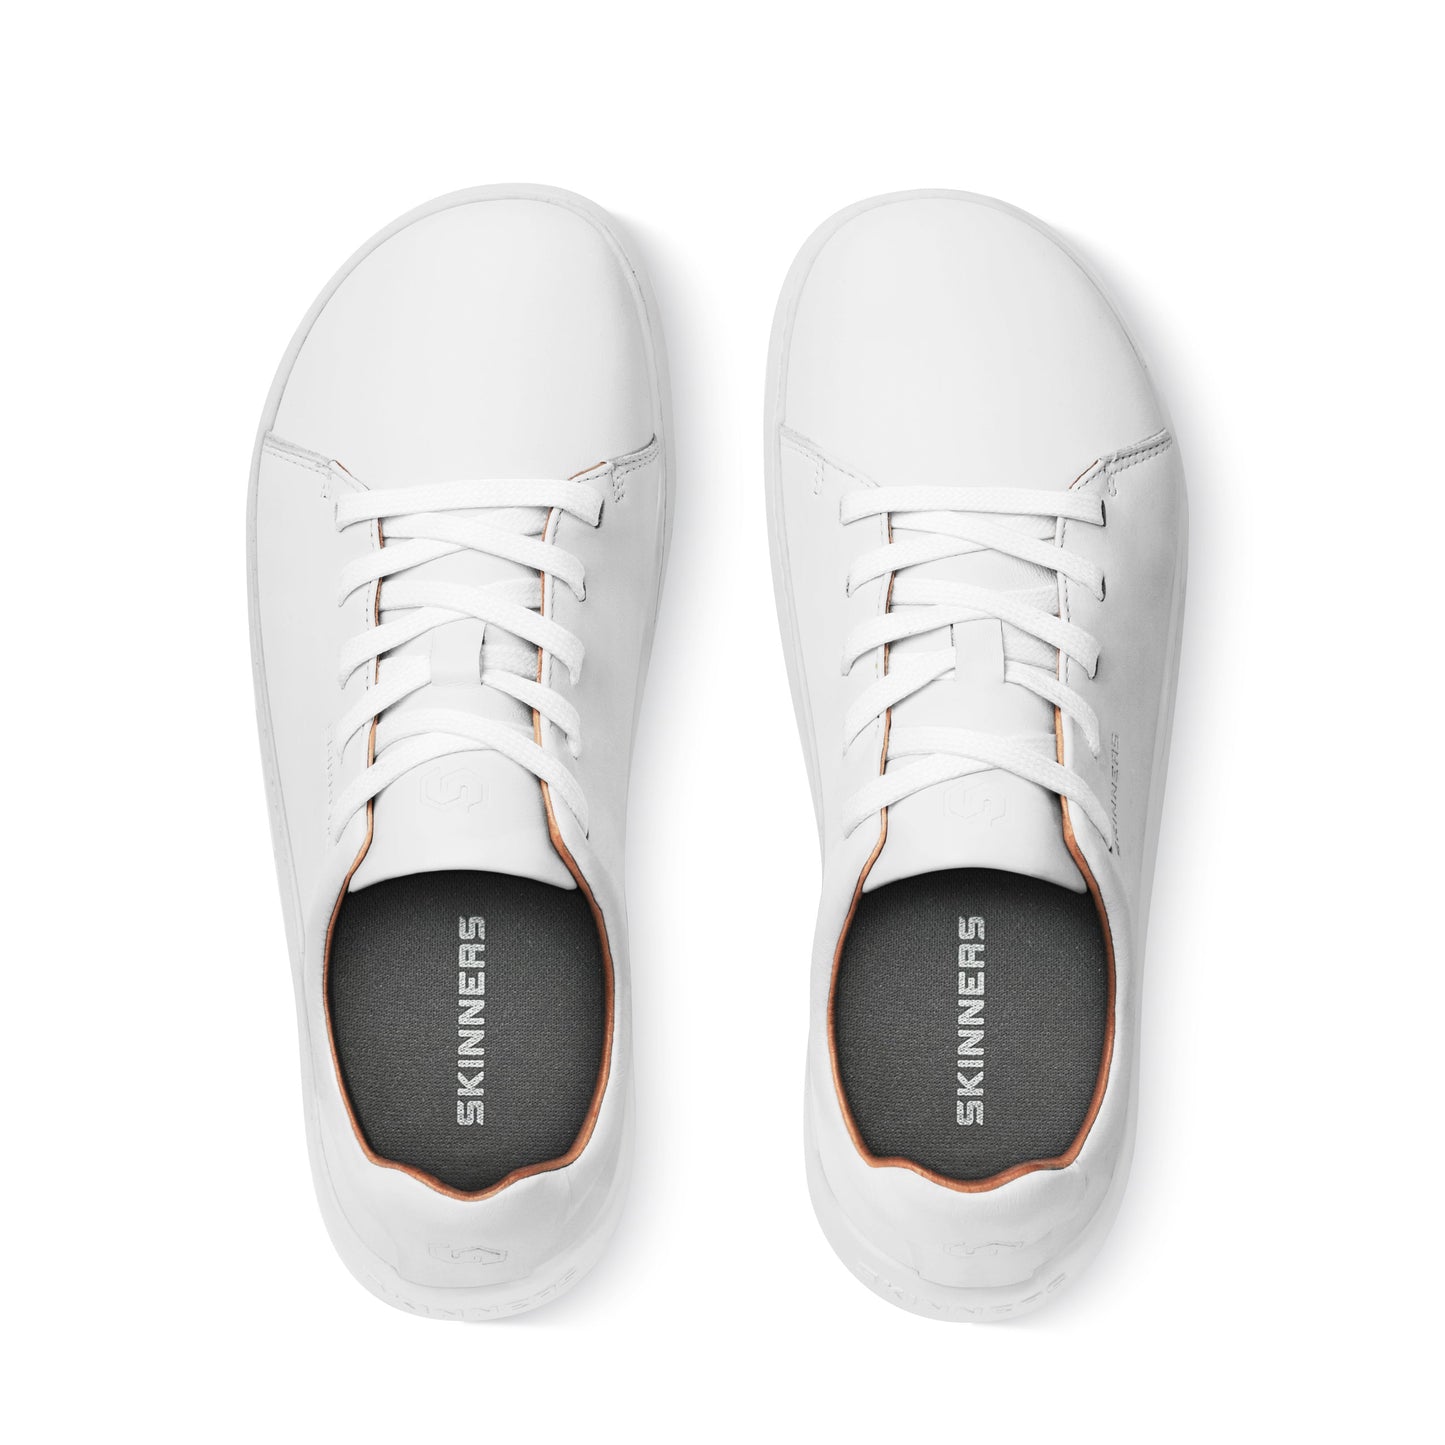 Mærkbare Walker barfods sneakers til kvinder og mænd i farven white / white, top